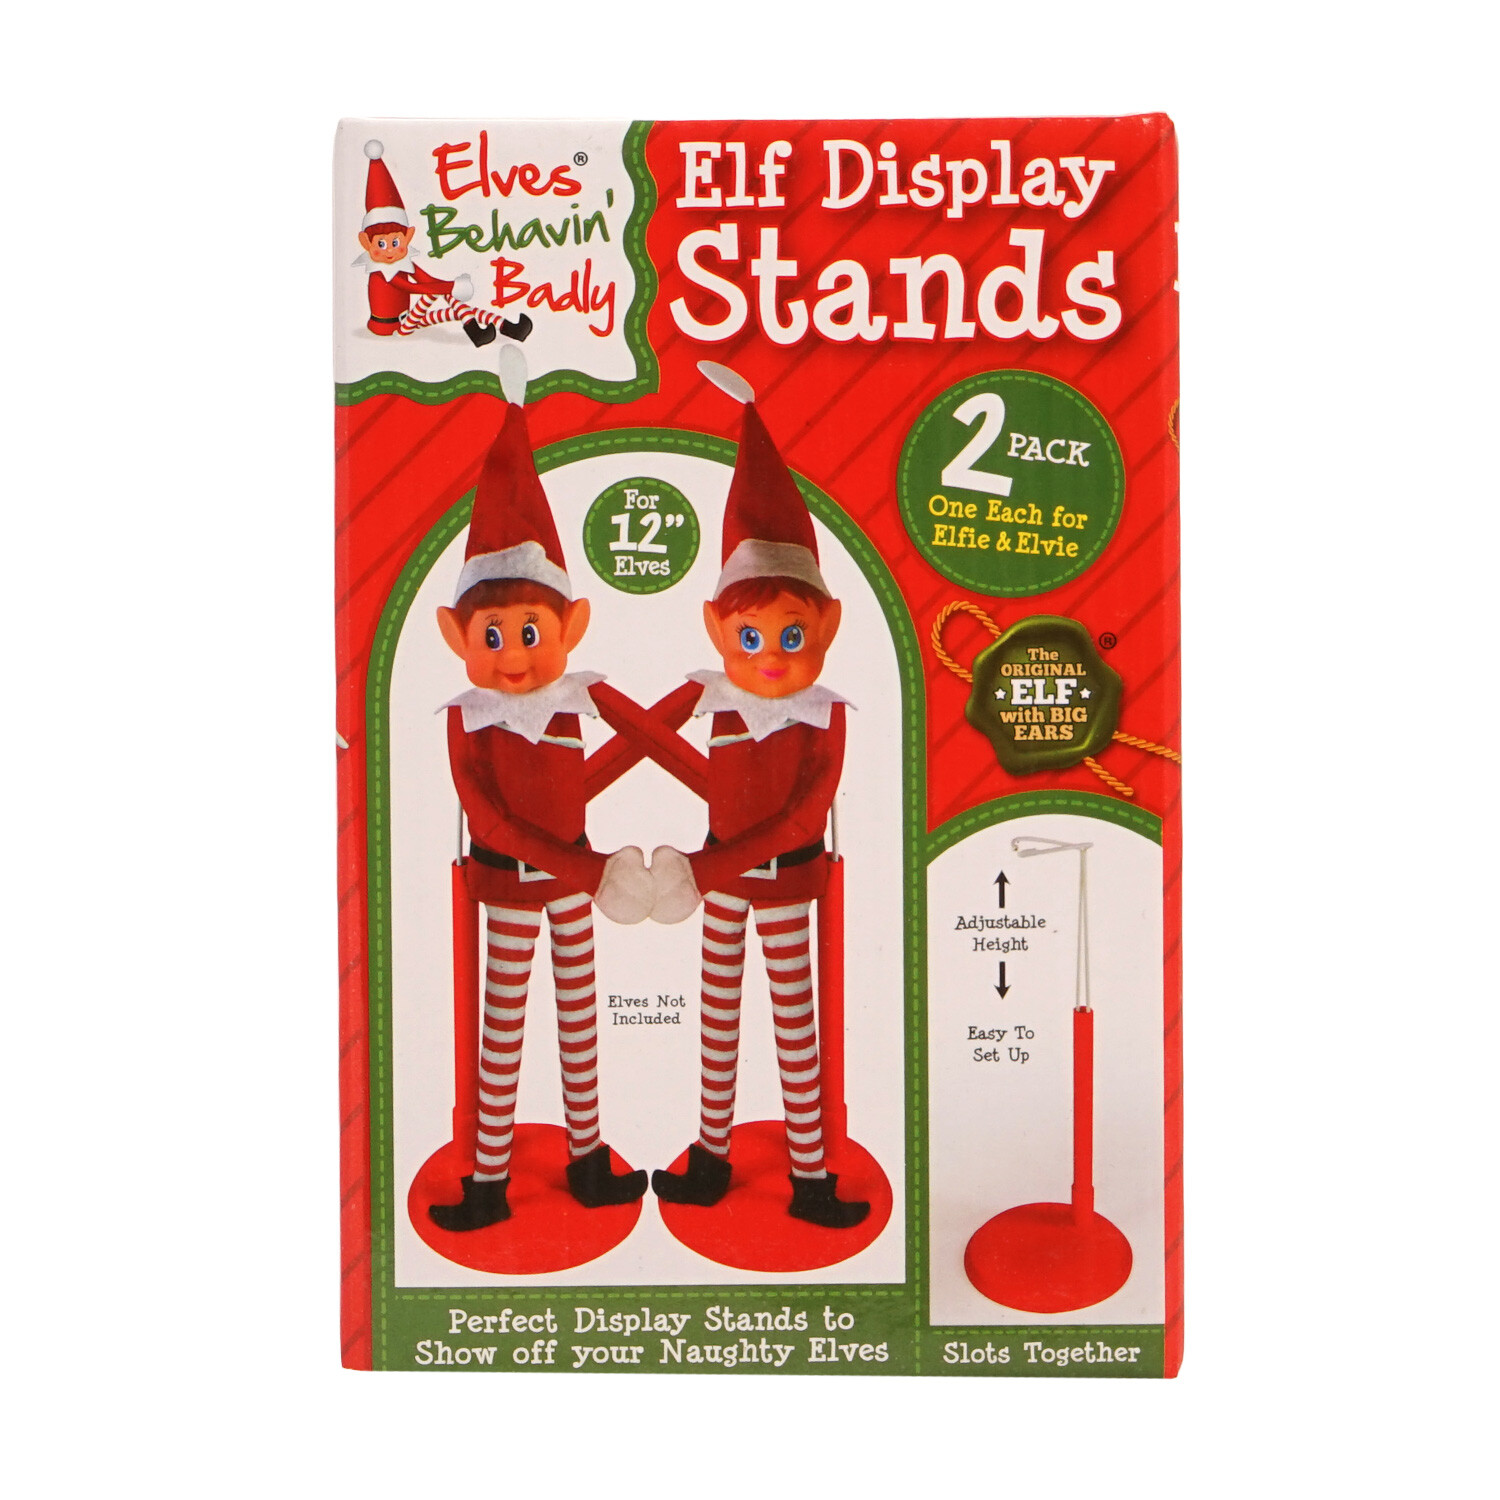 Elves Behavin' Badly Red Adjustable Elf Stand 2 Pack Image